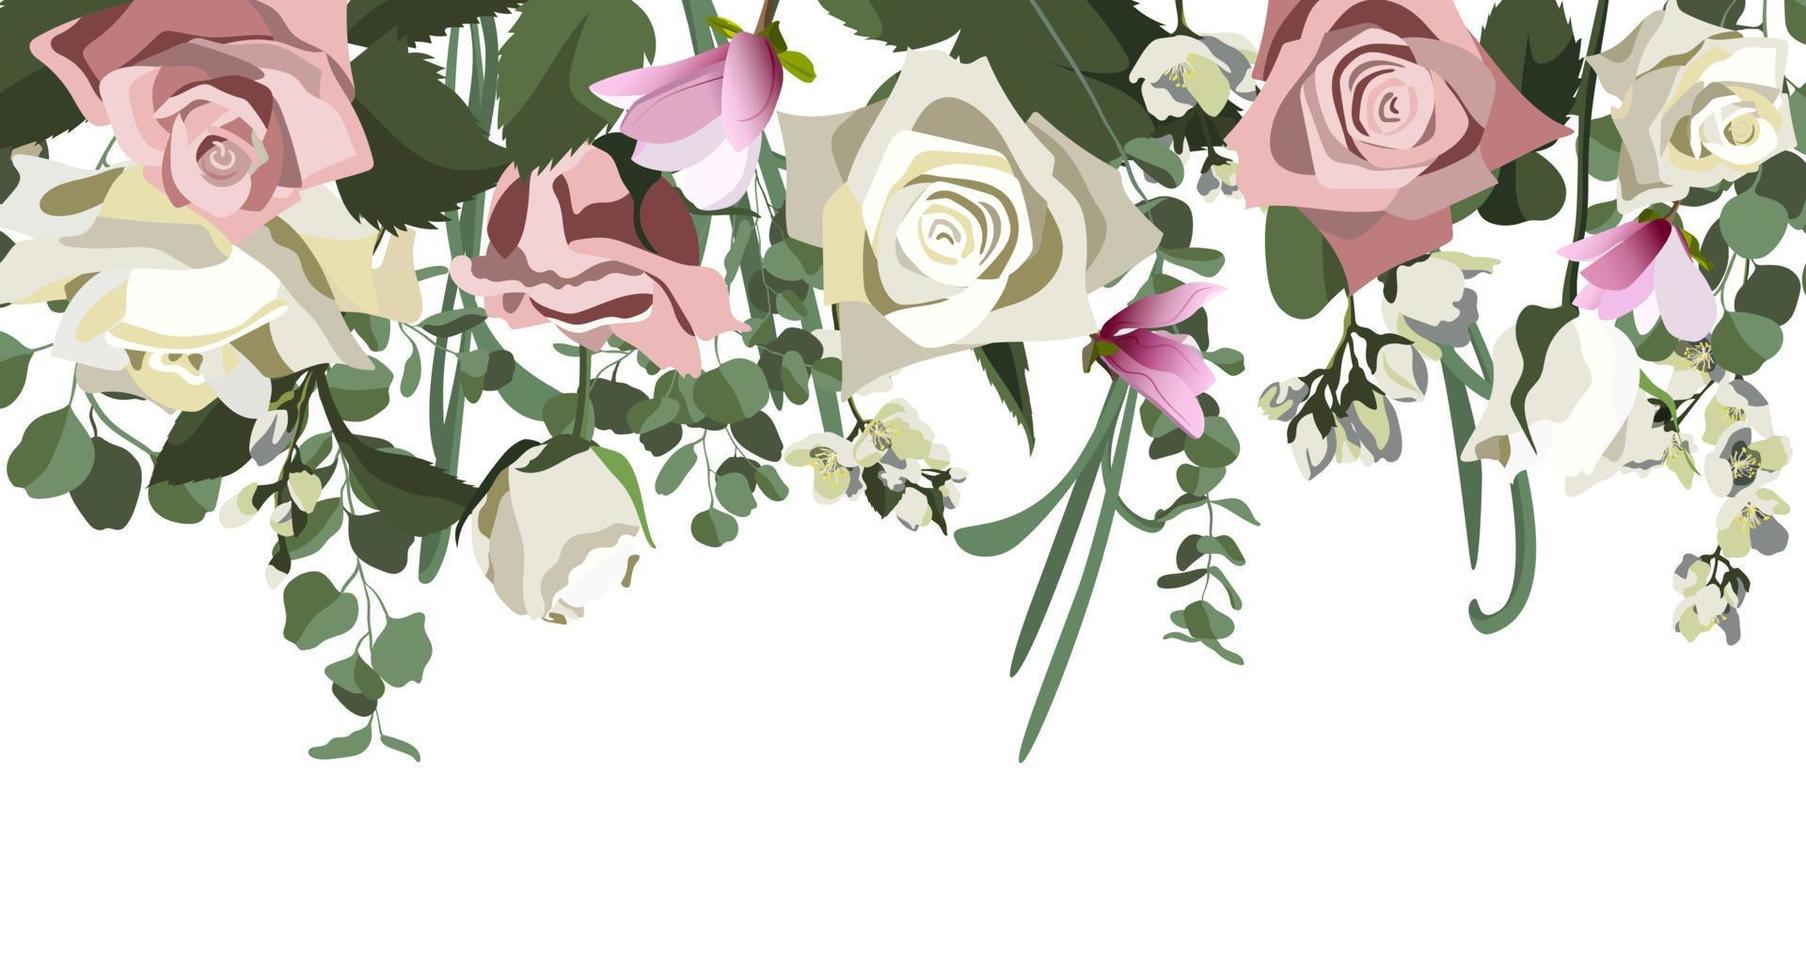 vektor bakgrund med blomsterarrangemang. botanisk sammansättning för bröllop eller gratulationskort. rosor, jasmin, eukalyptus. isolerad på vit bakgrund